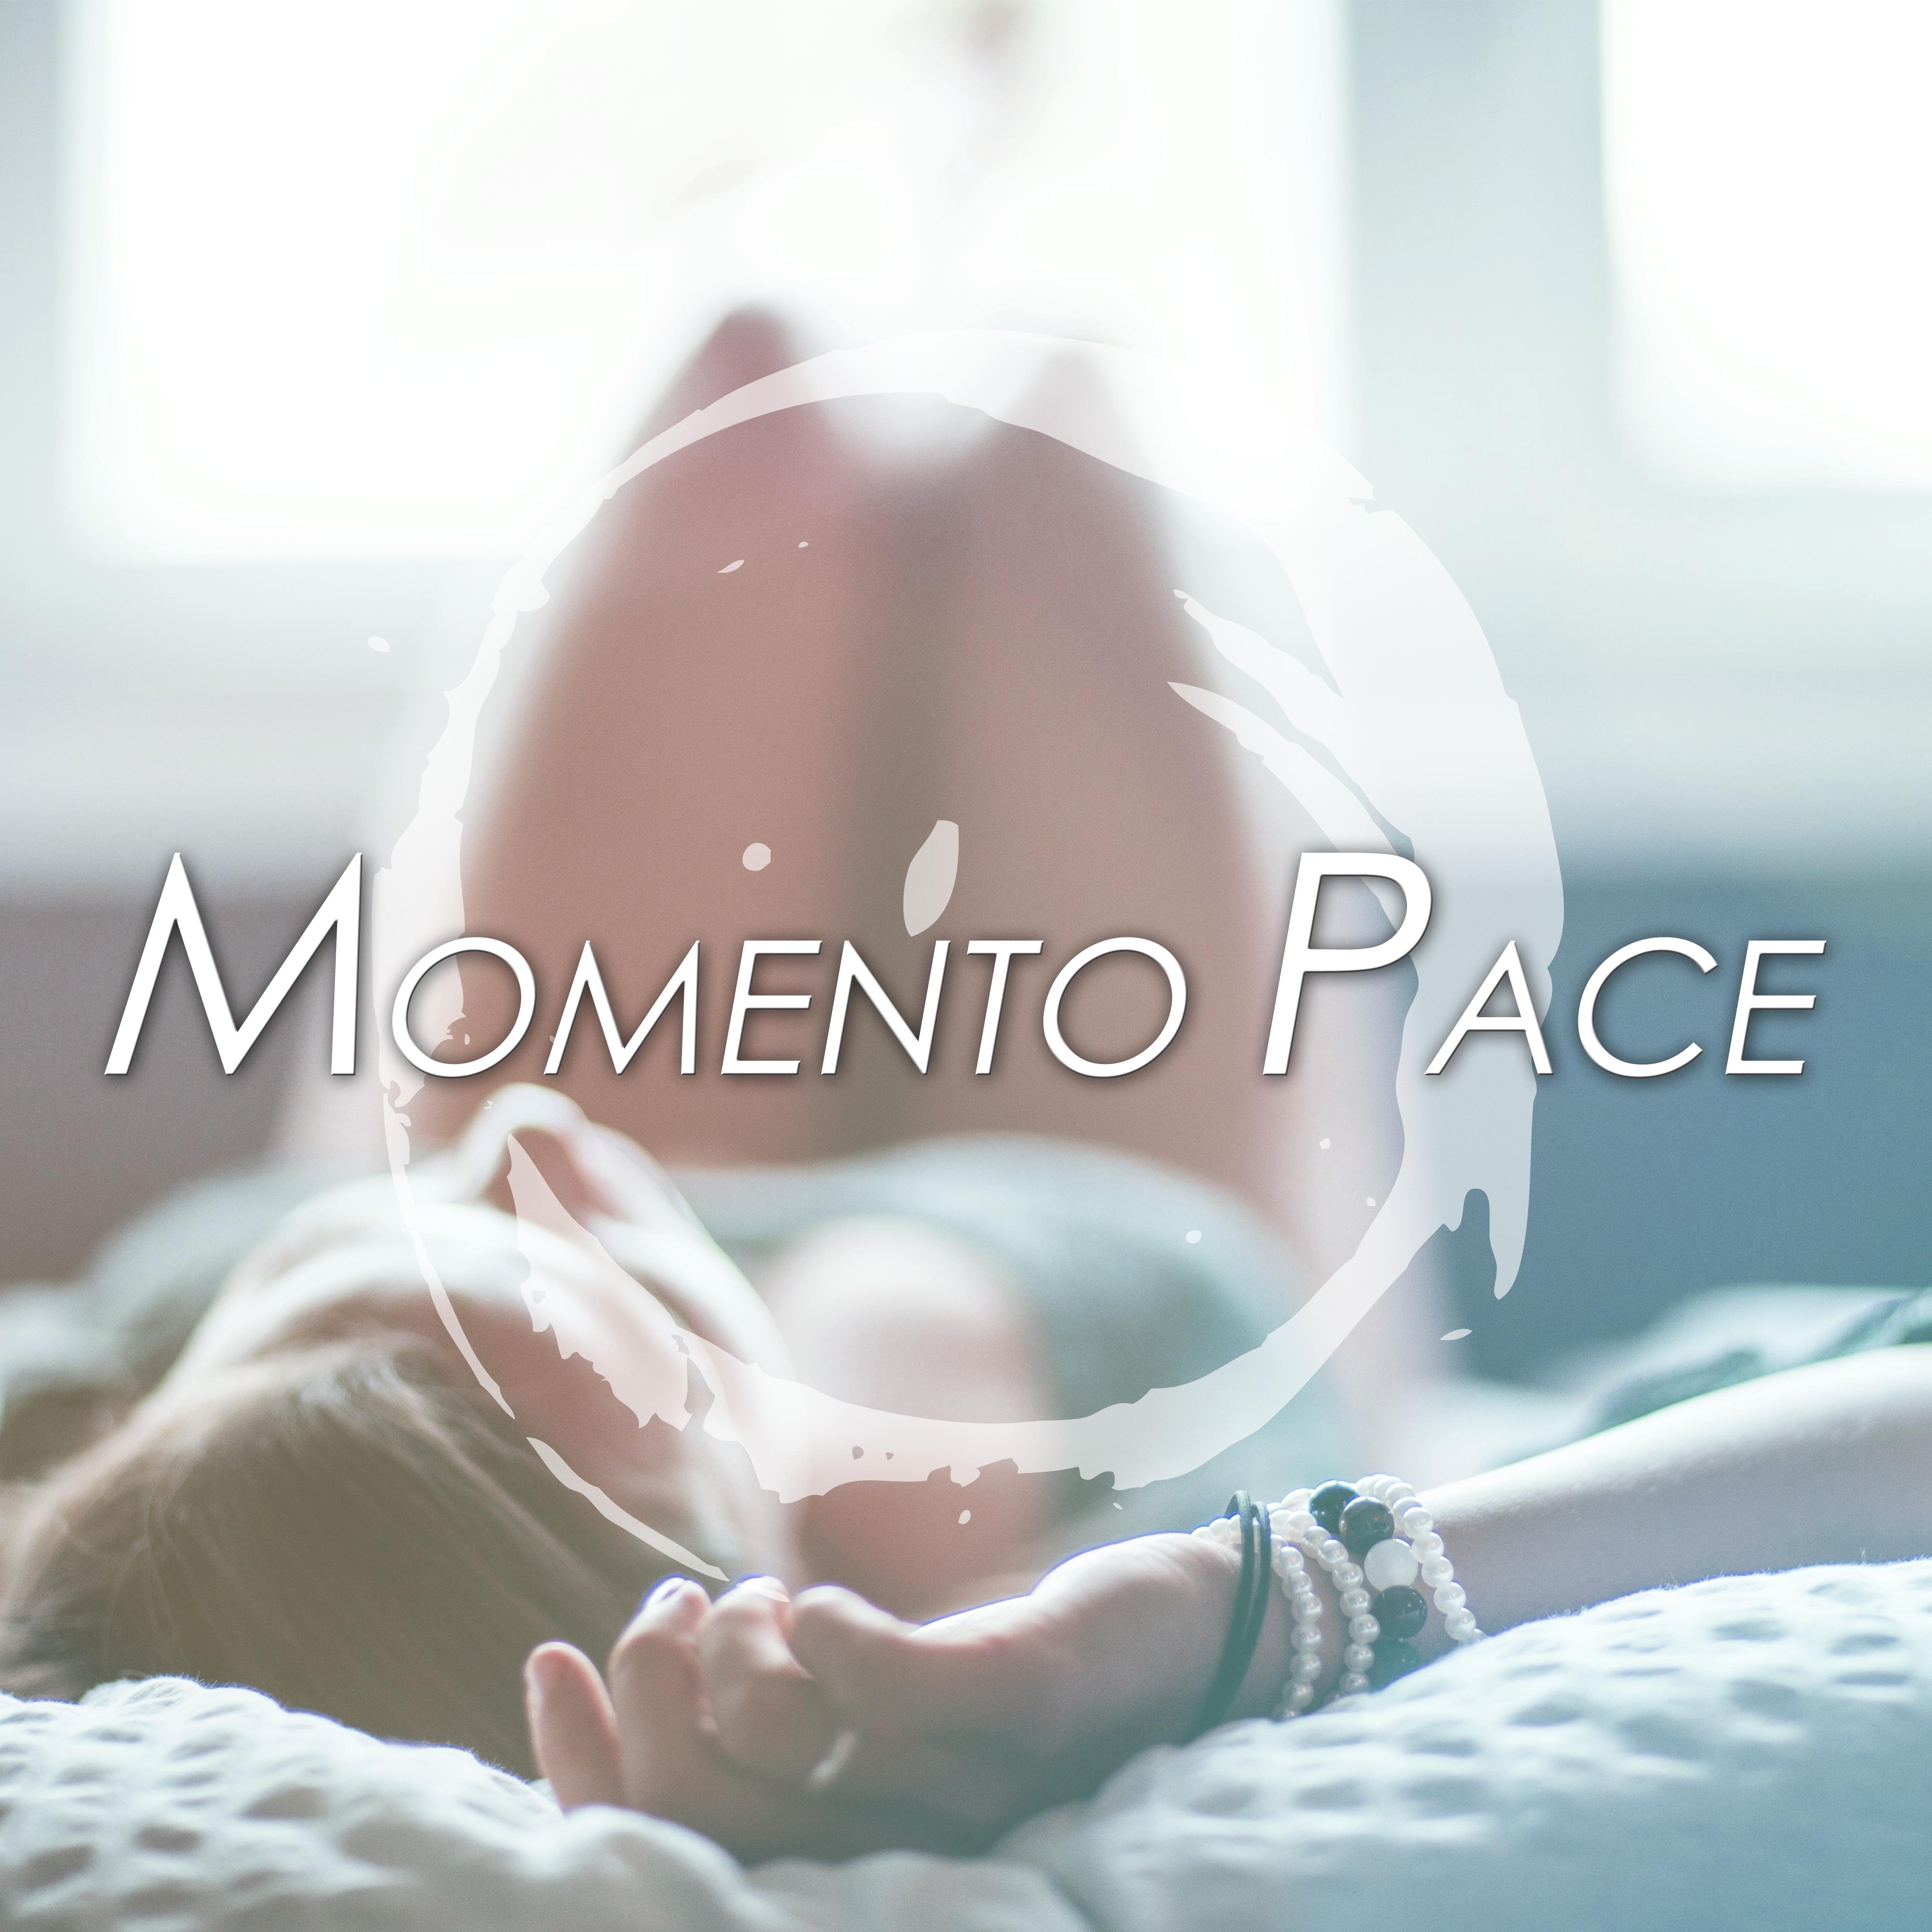 Momento Pace: Musica Romantica con Suoni della Natura per sciogliere Tensioni e diminuire Stress portando Serenita e Calma nella Vita